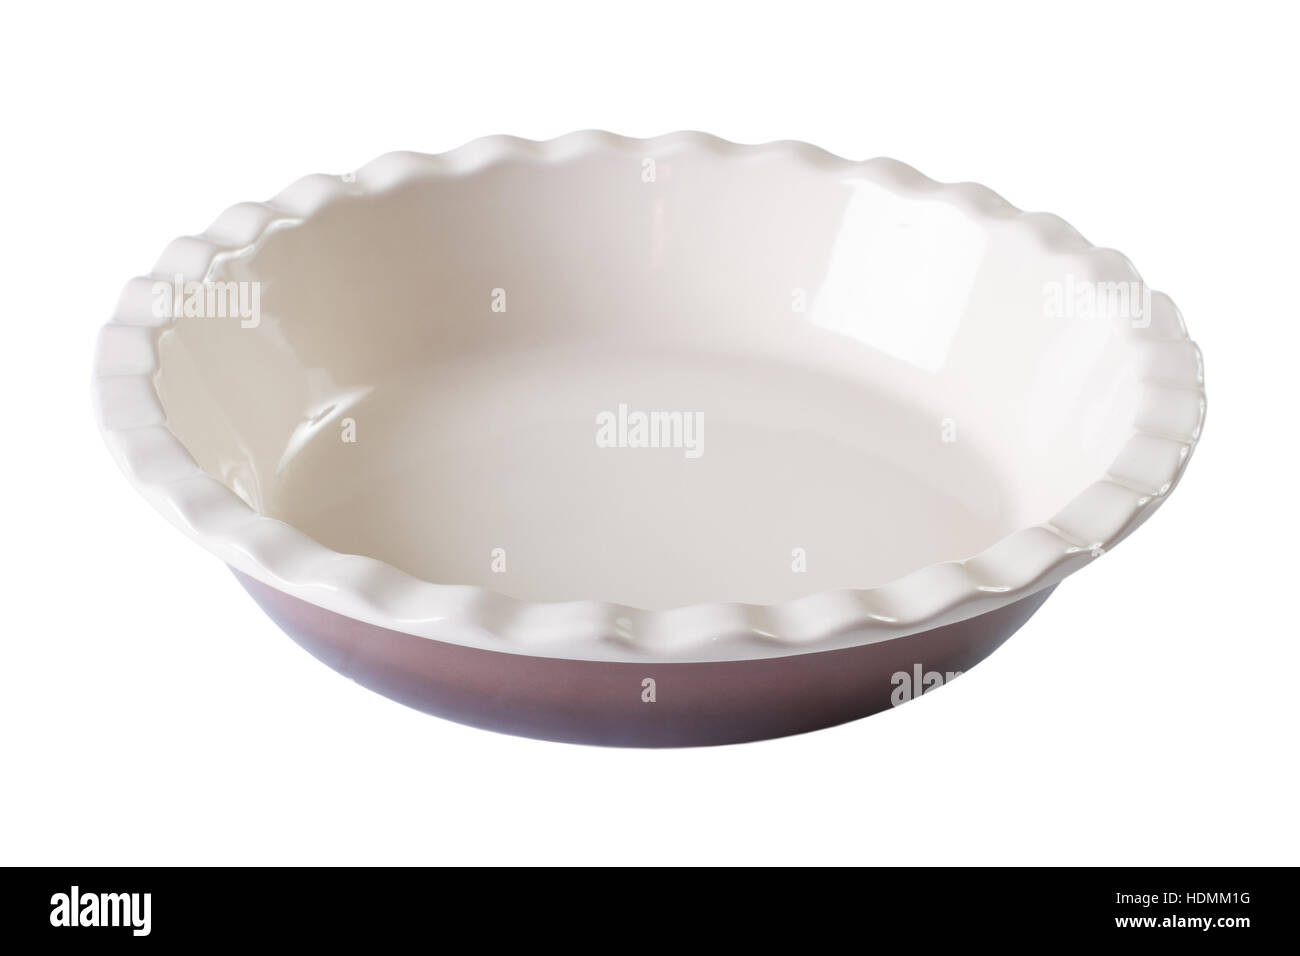 Round baking dish empty isolated on white background. Horizontal close-up Stock Photo